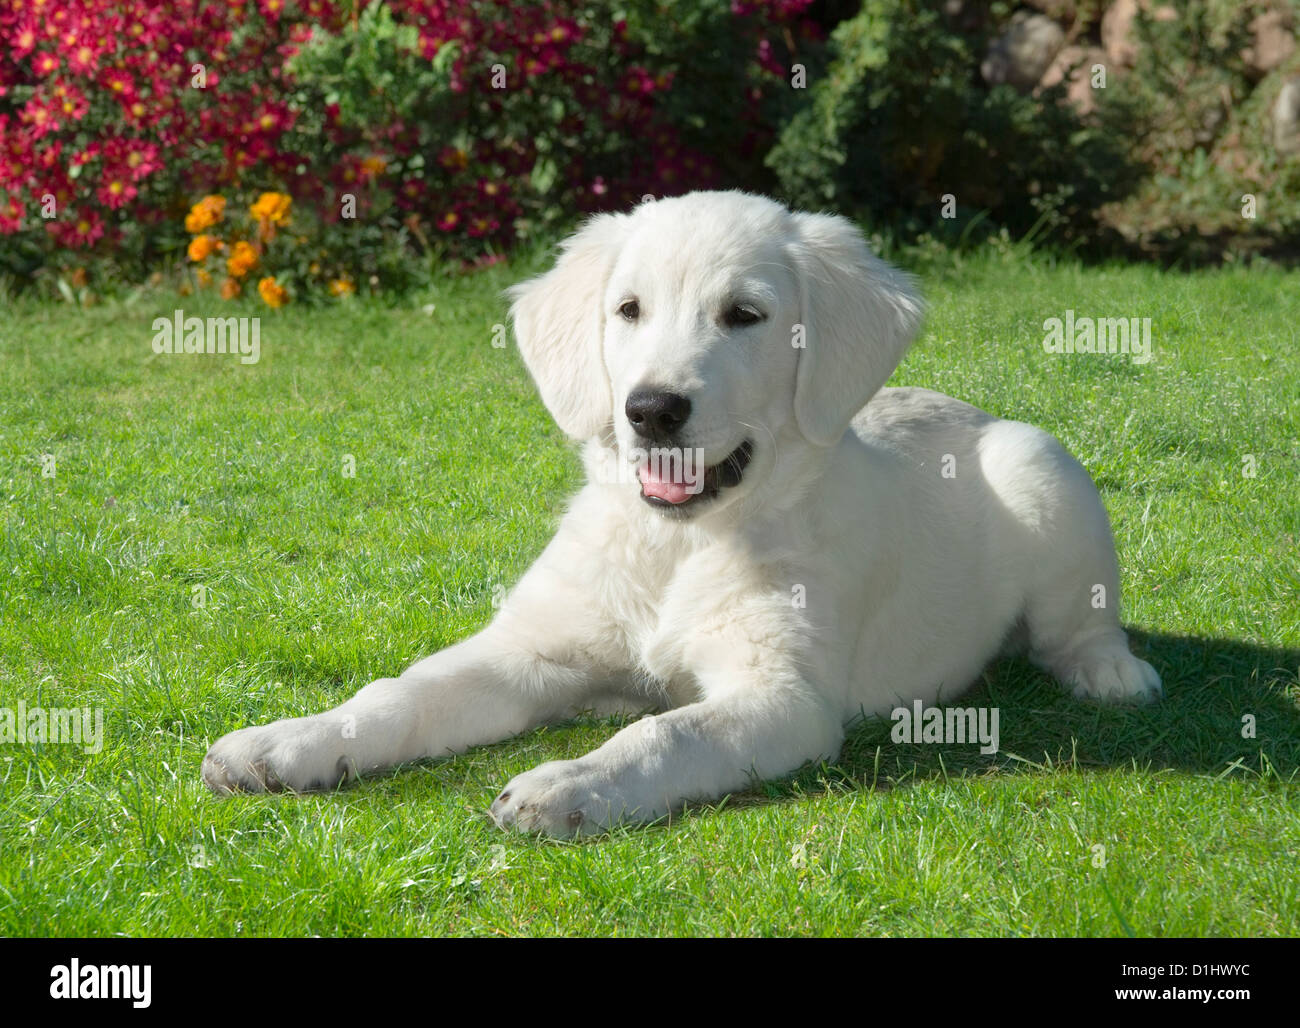 Golden Retriever dog in the garden Stock Photo